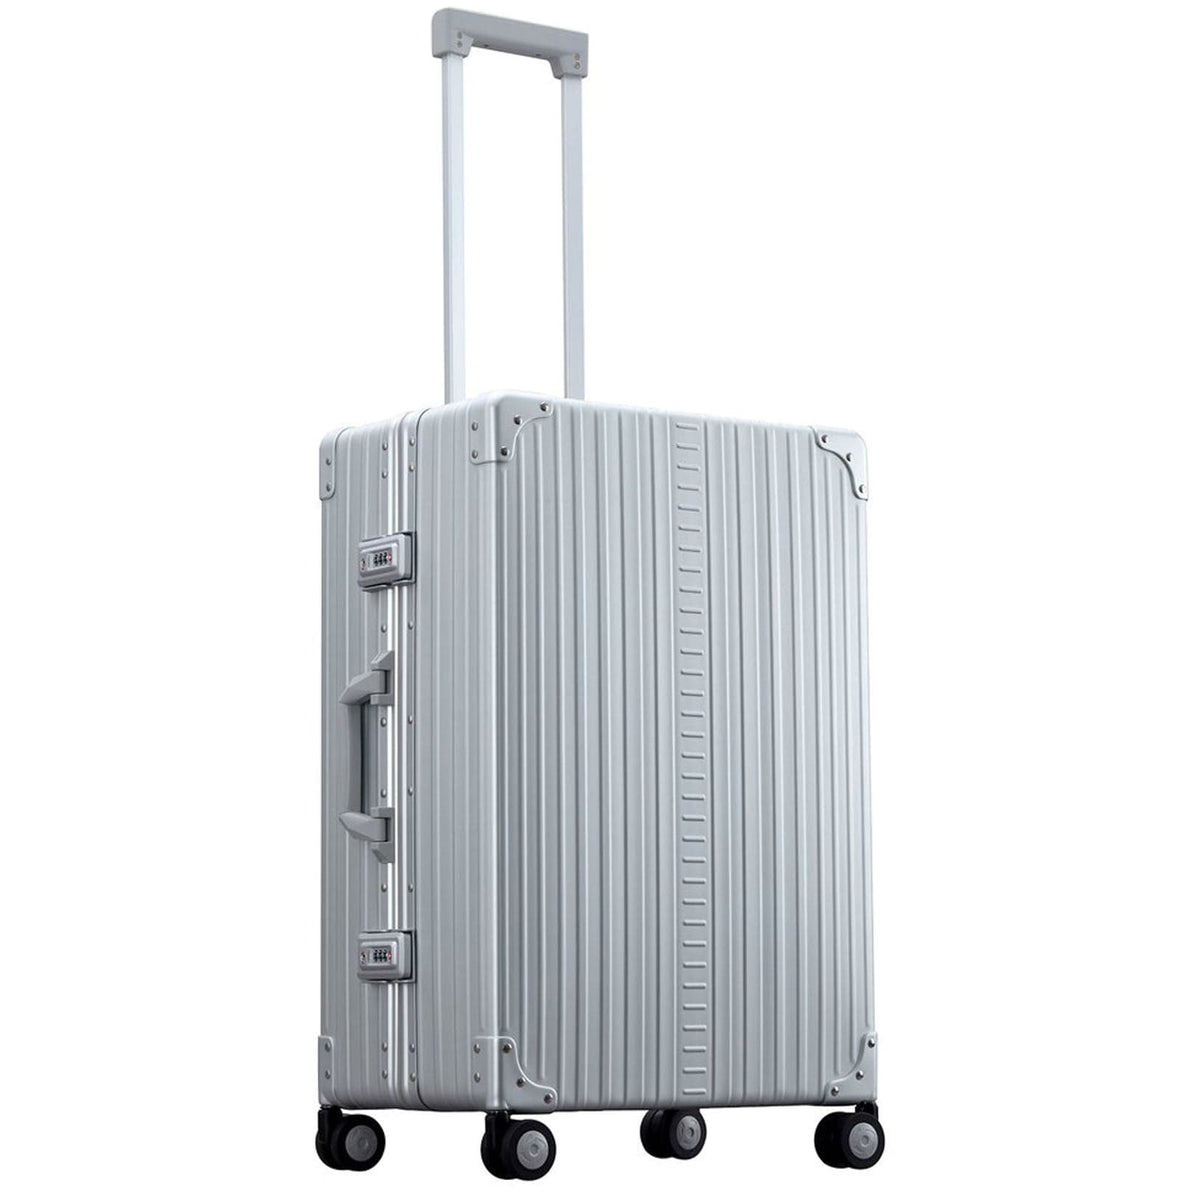 Aleon 26" Traveler Aluminum Hardside Checked Luggage